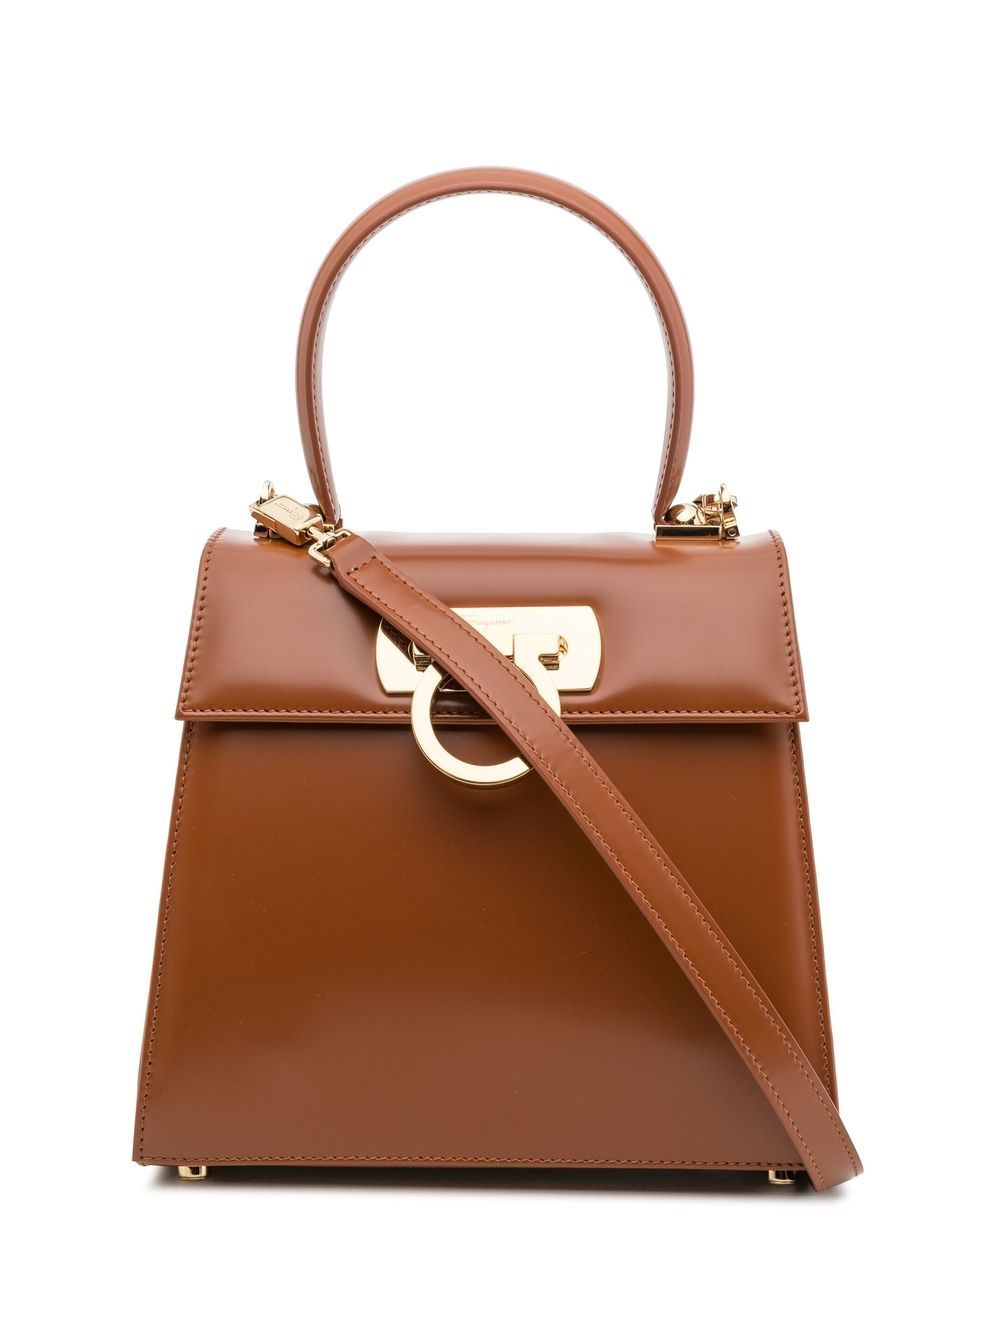 Ferragamo Iconic Tote Bag In Brown